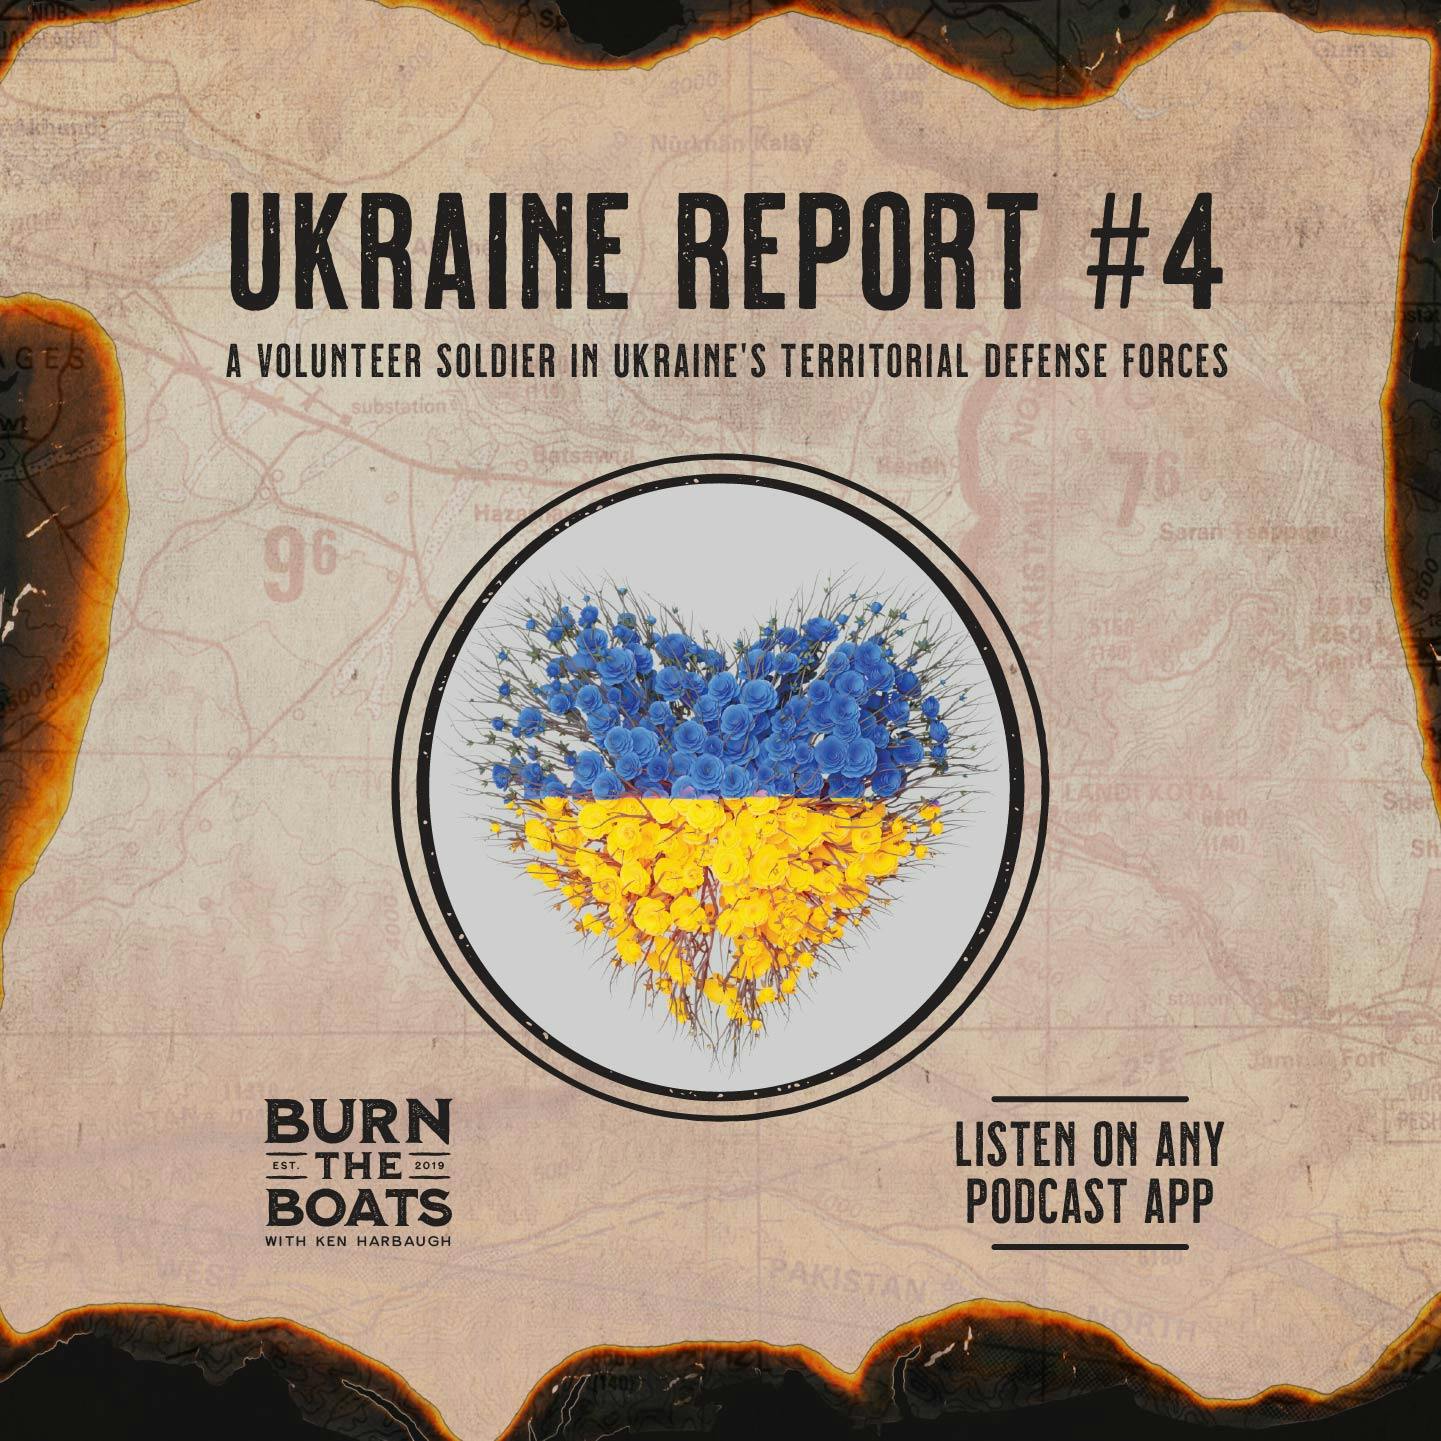 Ukraine Report #4: A Volunteer Soldier in Ukraine’s Territorial Defense Forces